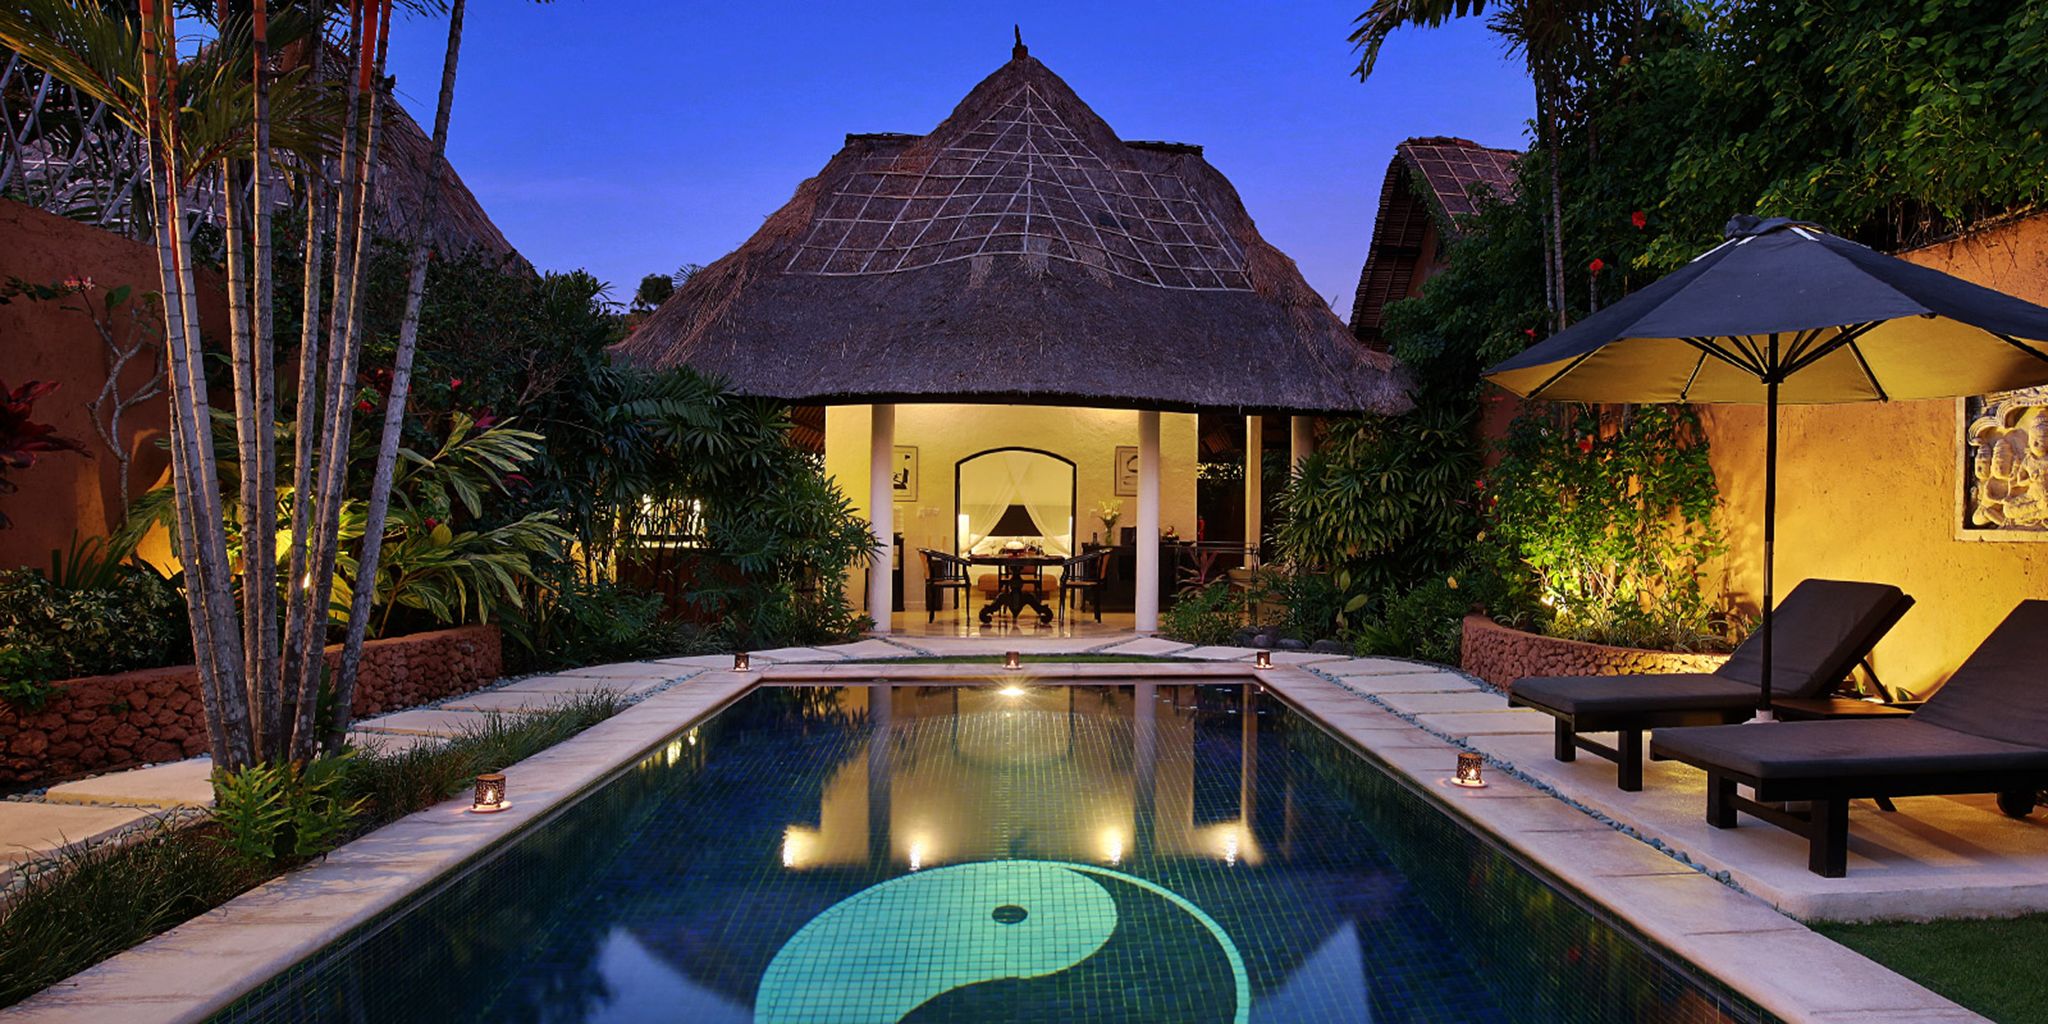 The Villas Bali Hotel And Spa in Bali, Indonesia